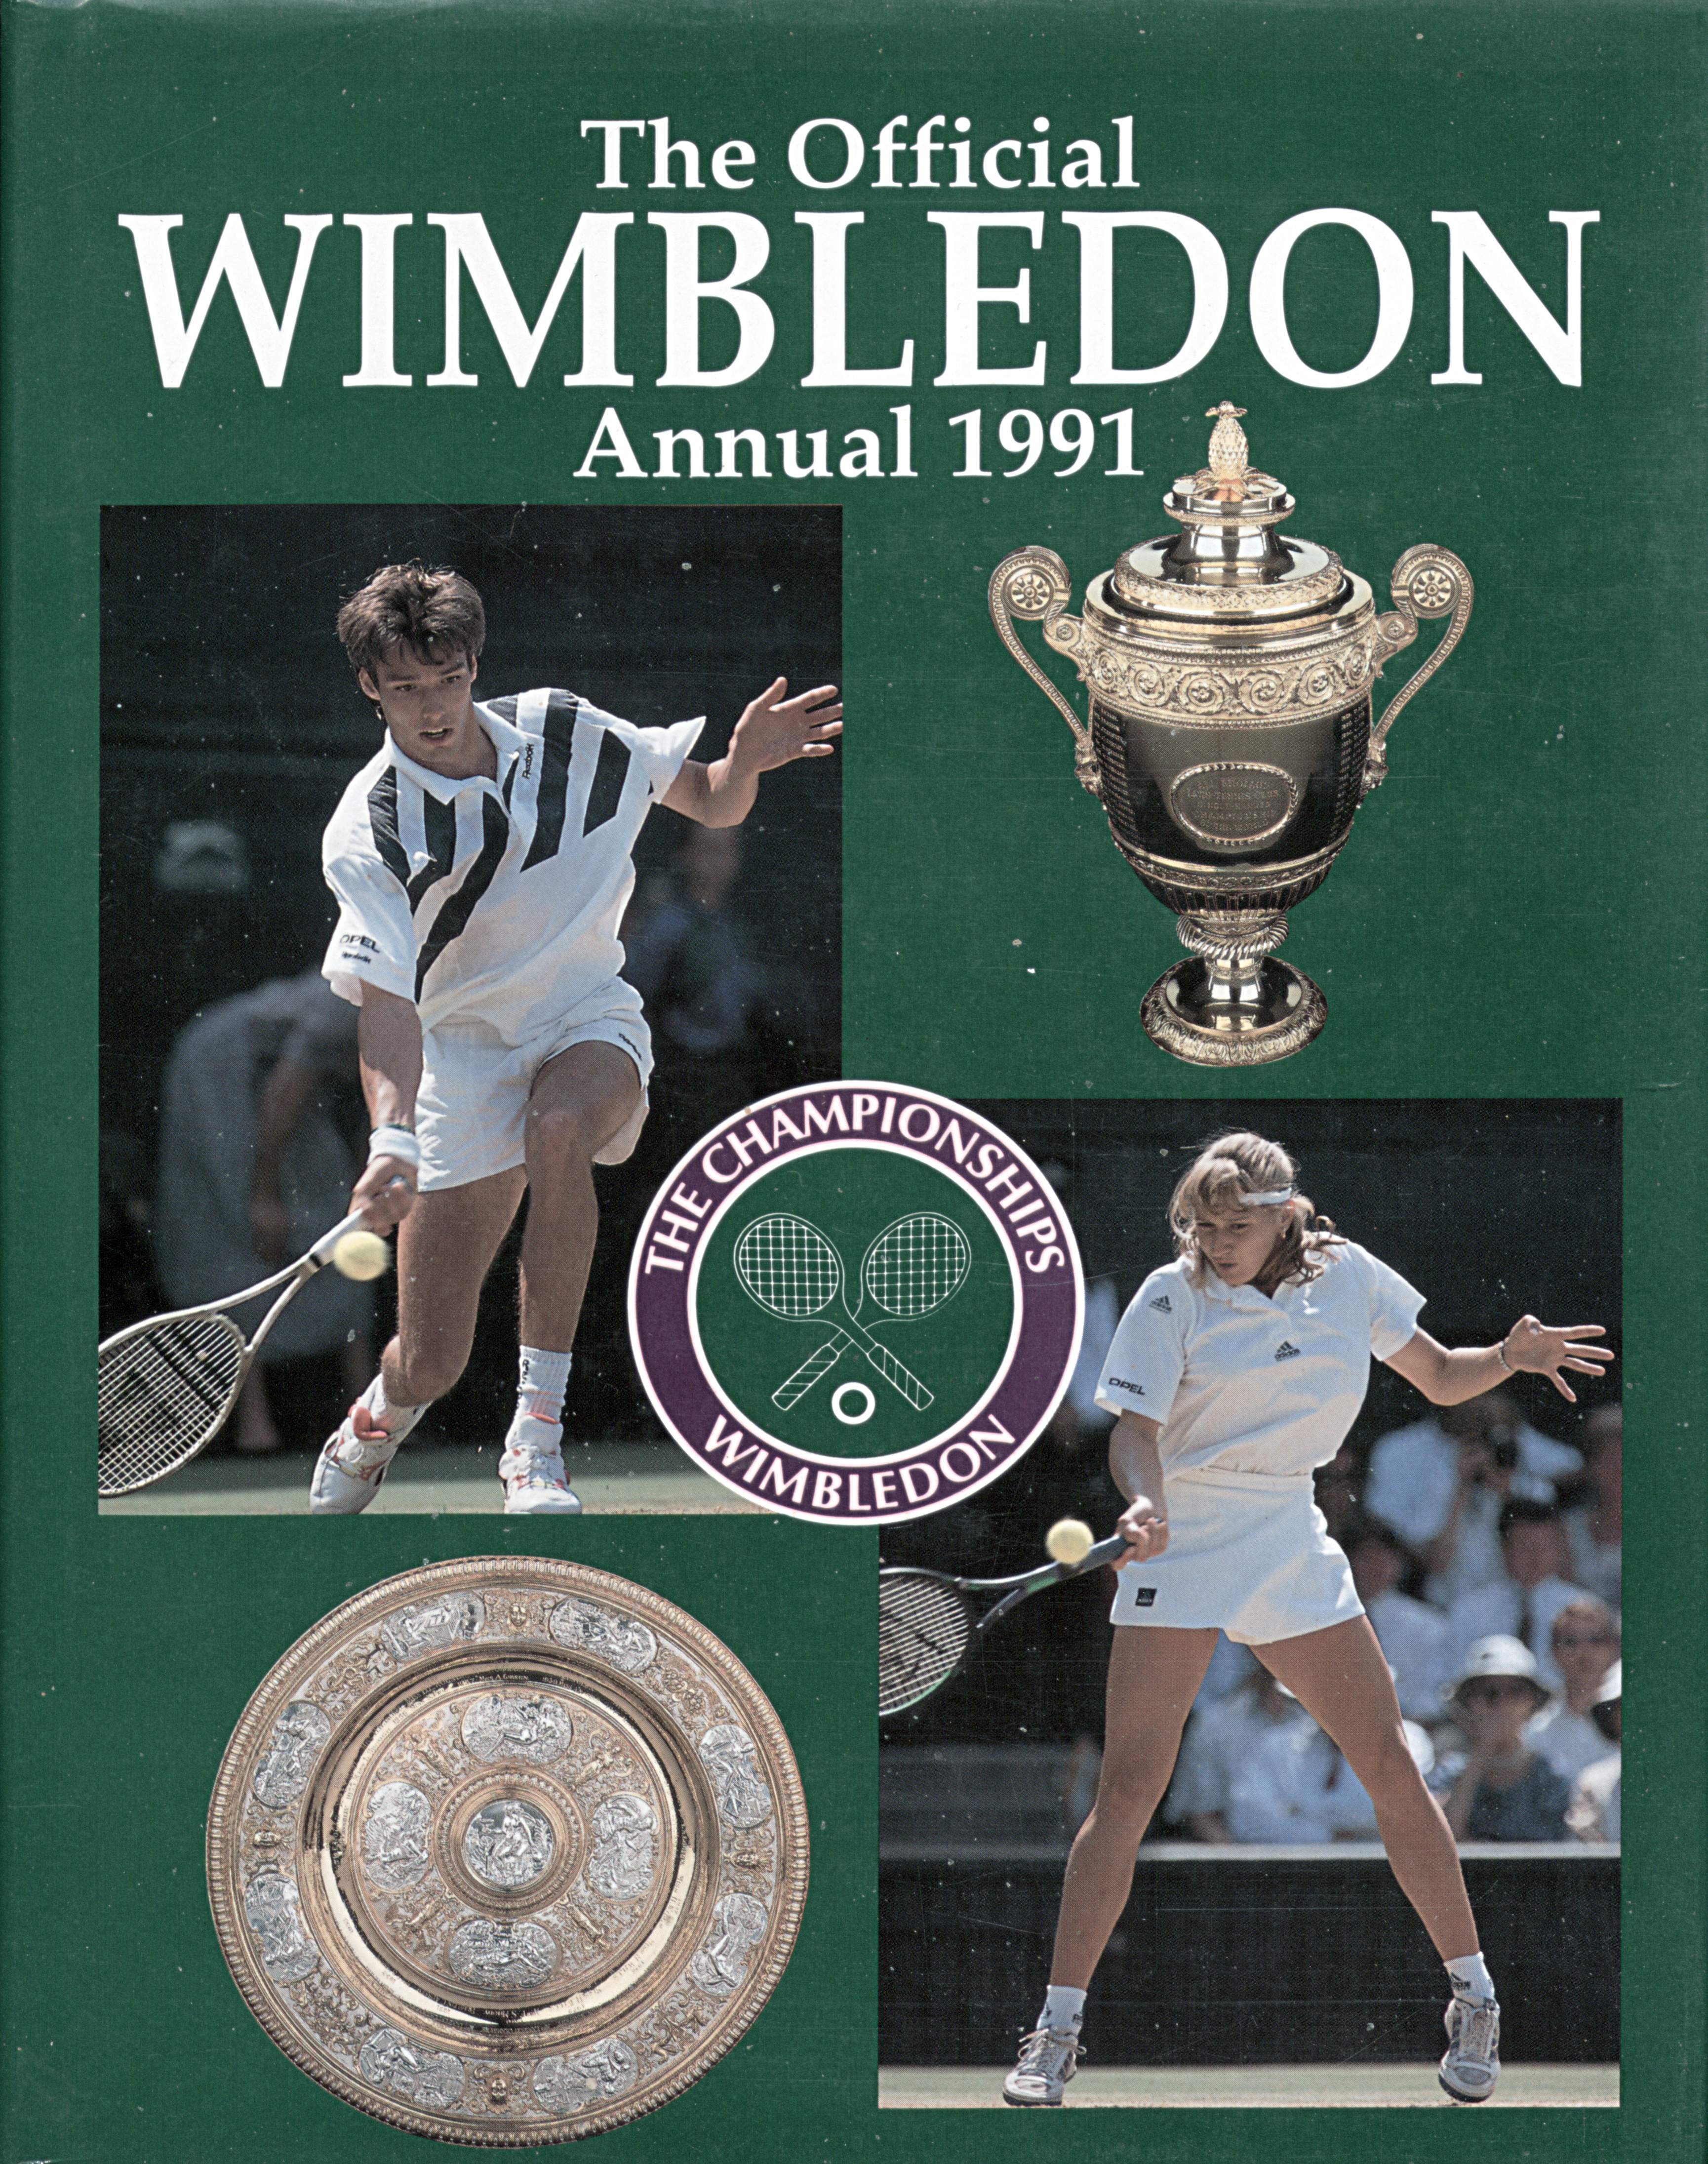 The Championships Wimbledon 1991